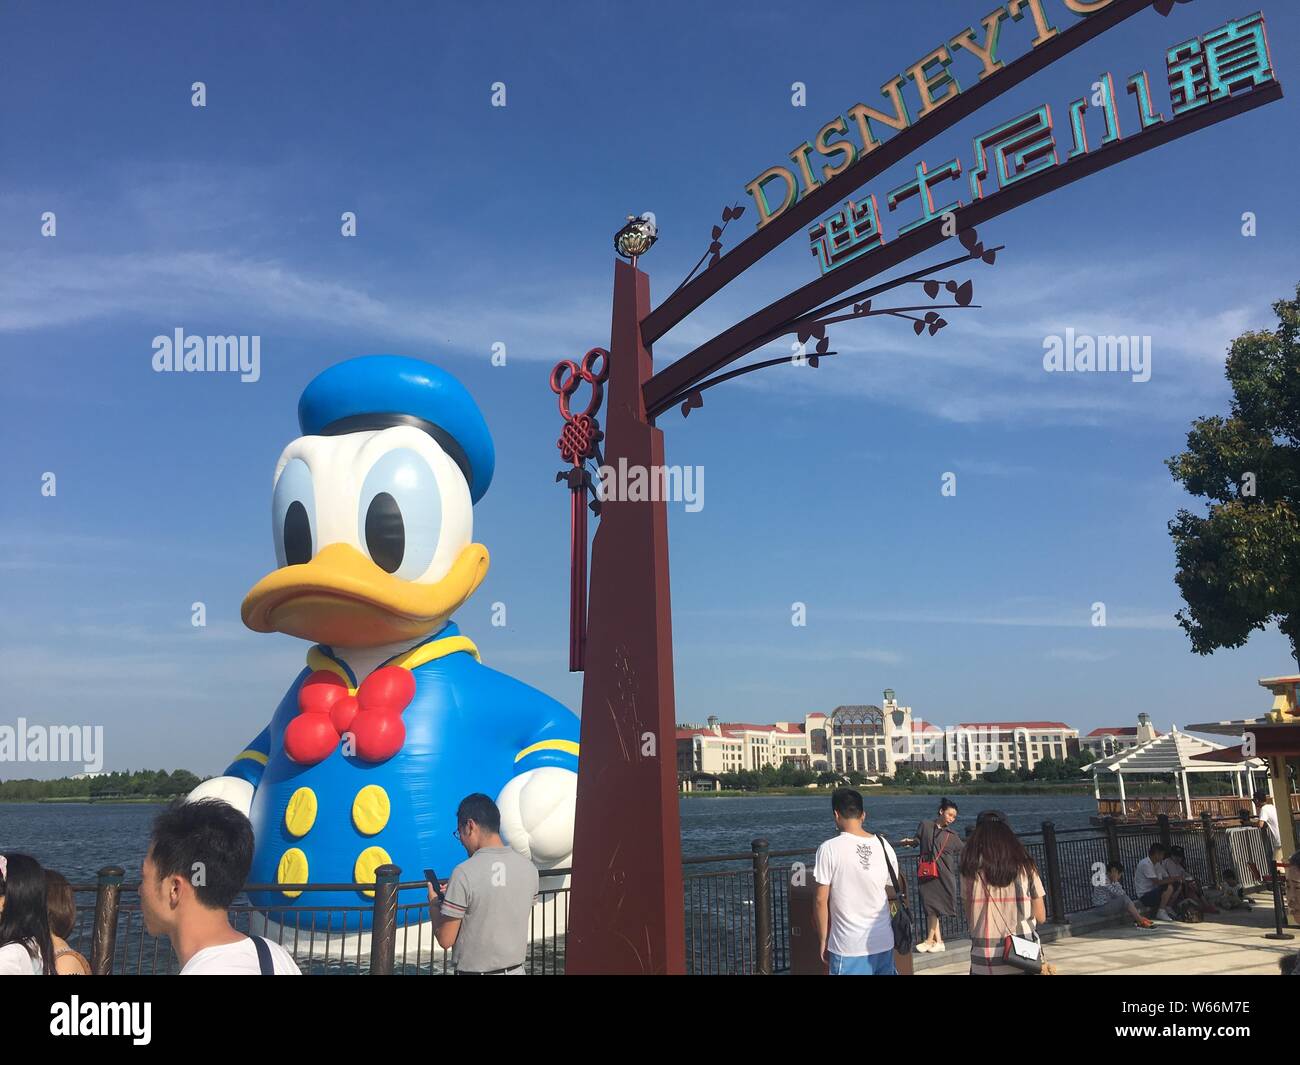 Un 11 mètres de haut est Donald Duck gonflable sur l'affichage au bord de lac dans la ville de Disney au Shanghai Disney Resort à Shanghai, Chine, le 9 juillet 2018 Banque D'Images